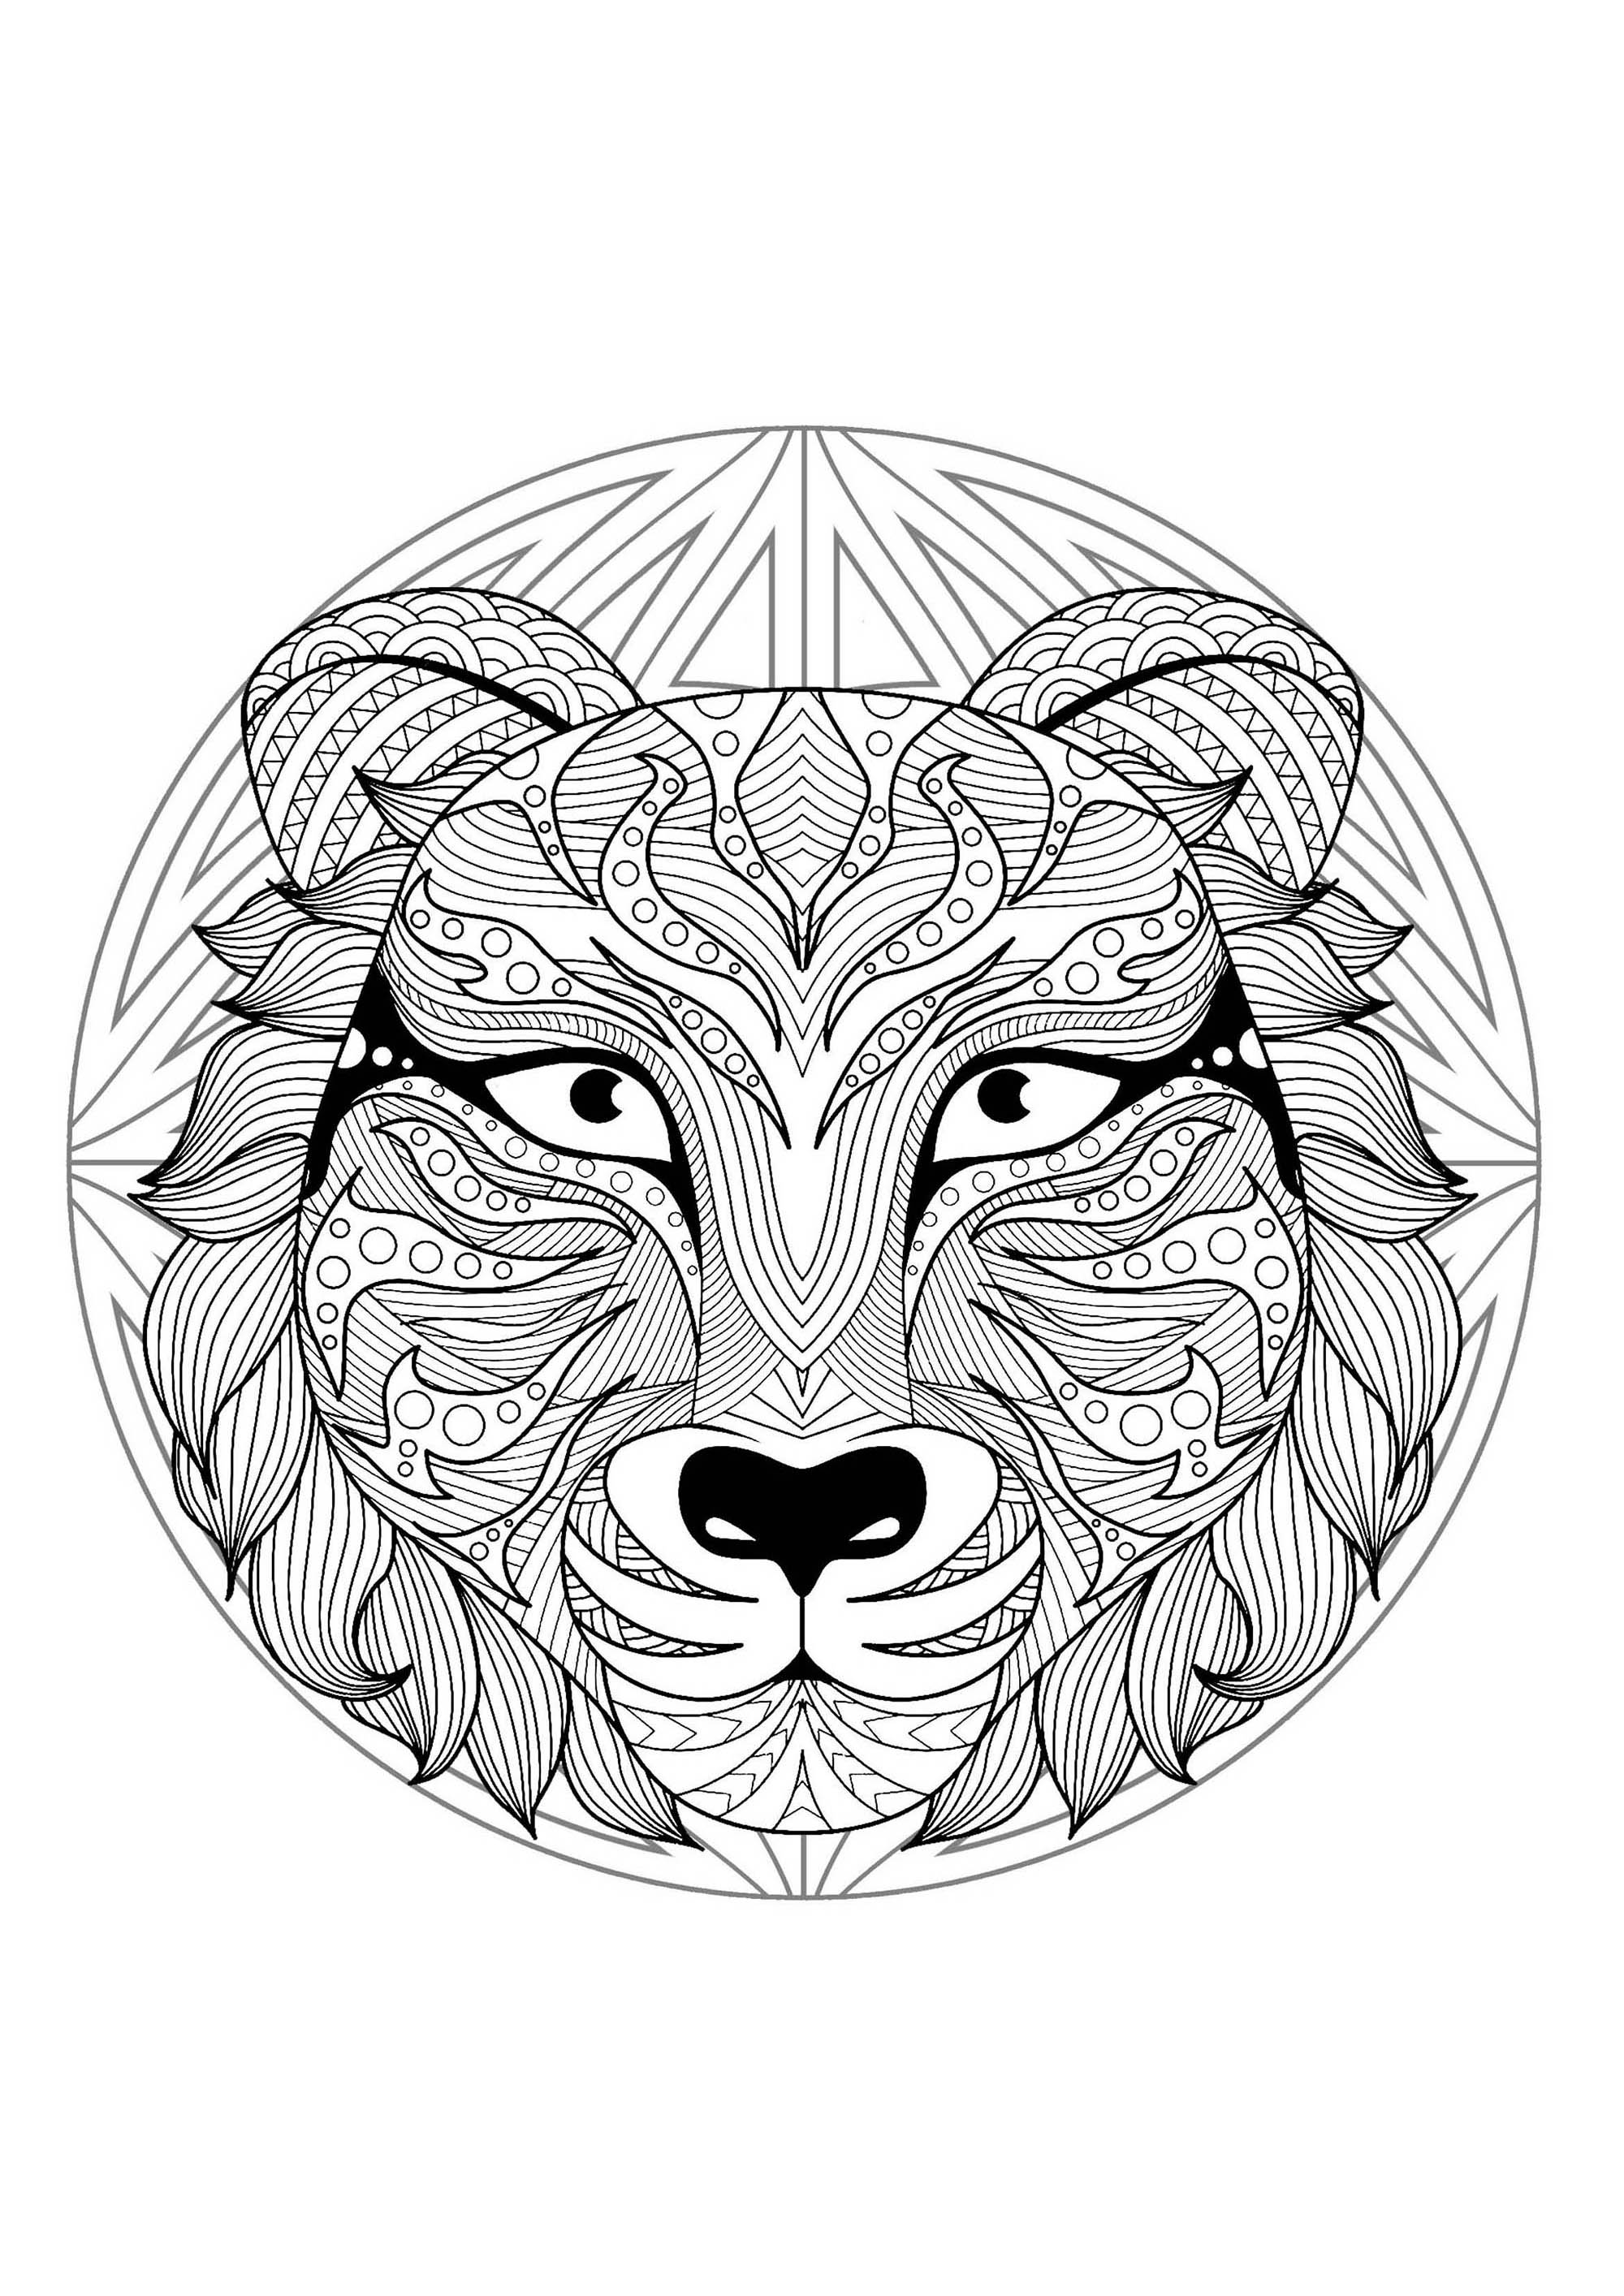 Mandala zum Ausmalen mit ganz besonderem Tigerkopf und einfachen Mustern im Hintergrund